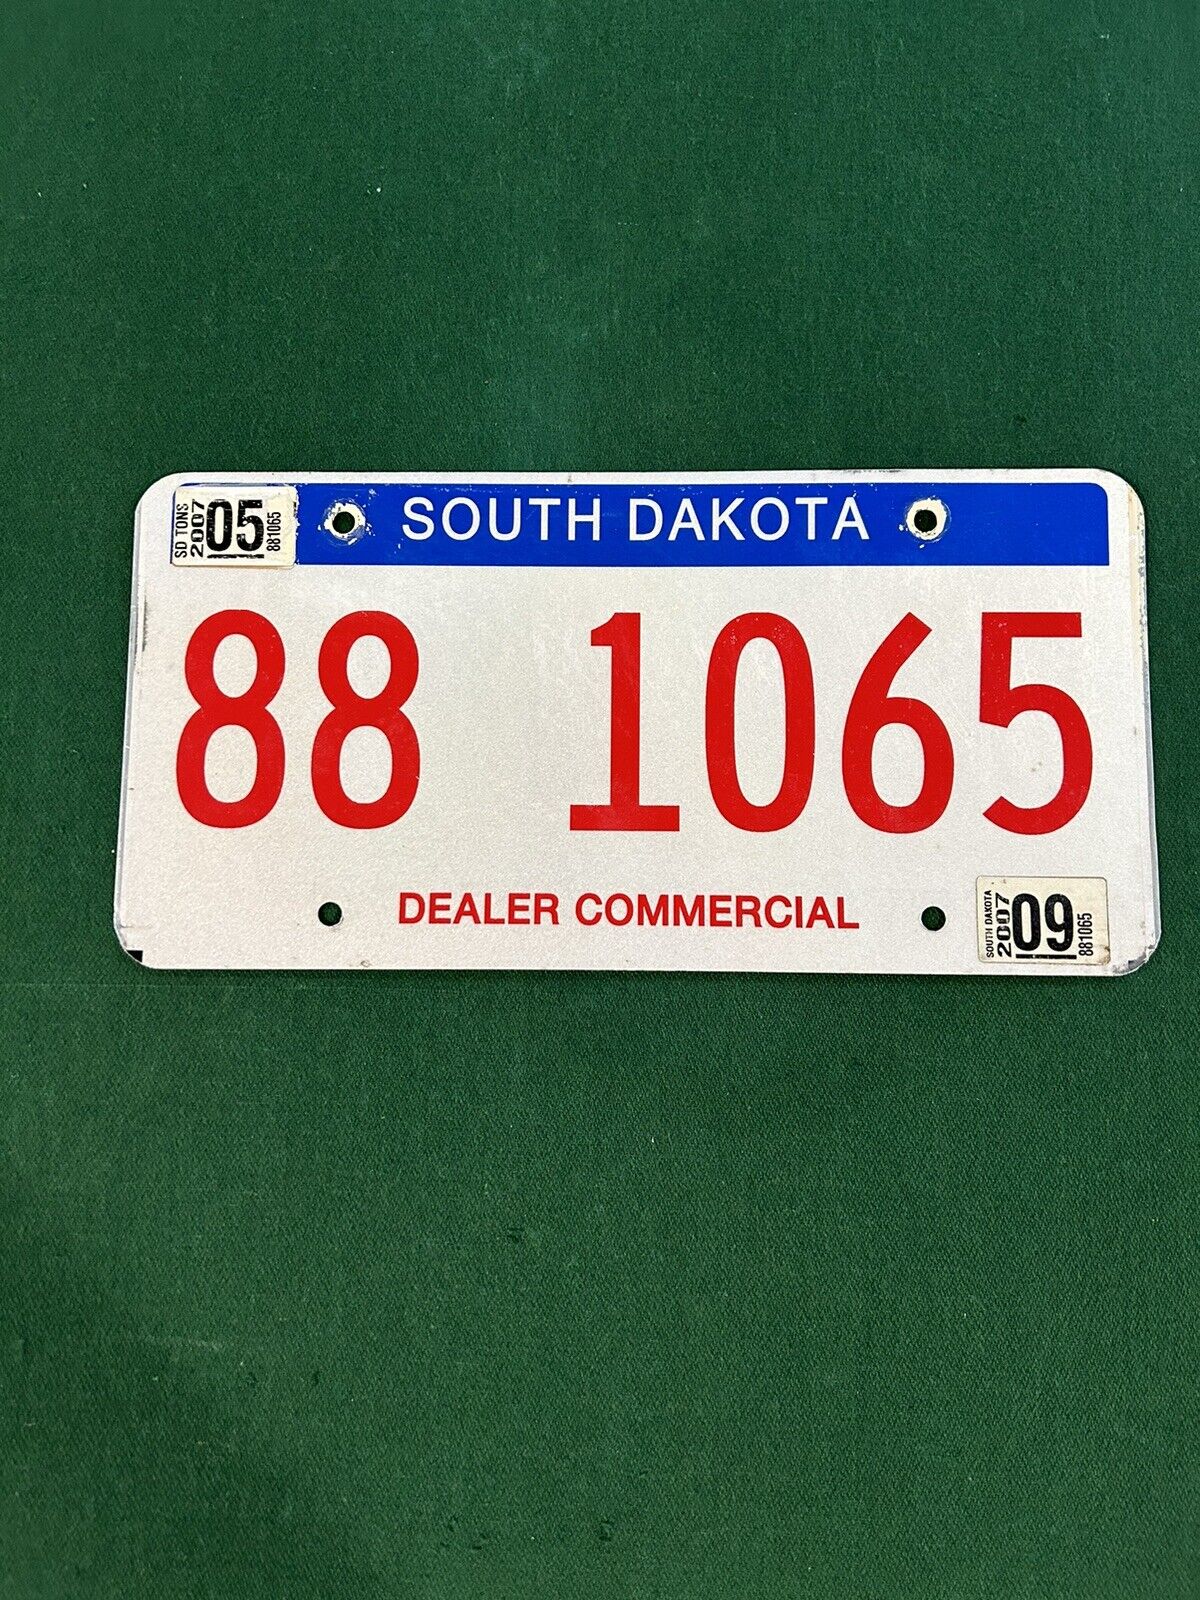 Rare SOUTH DAKOTA Commercial Dealer License Plate. Expired 2007 #88 1065